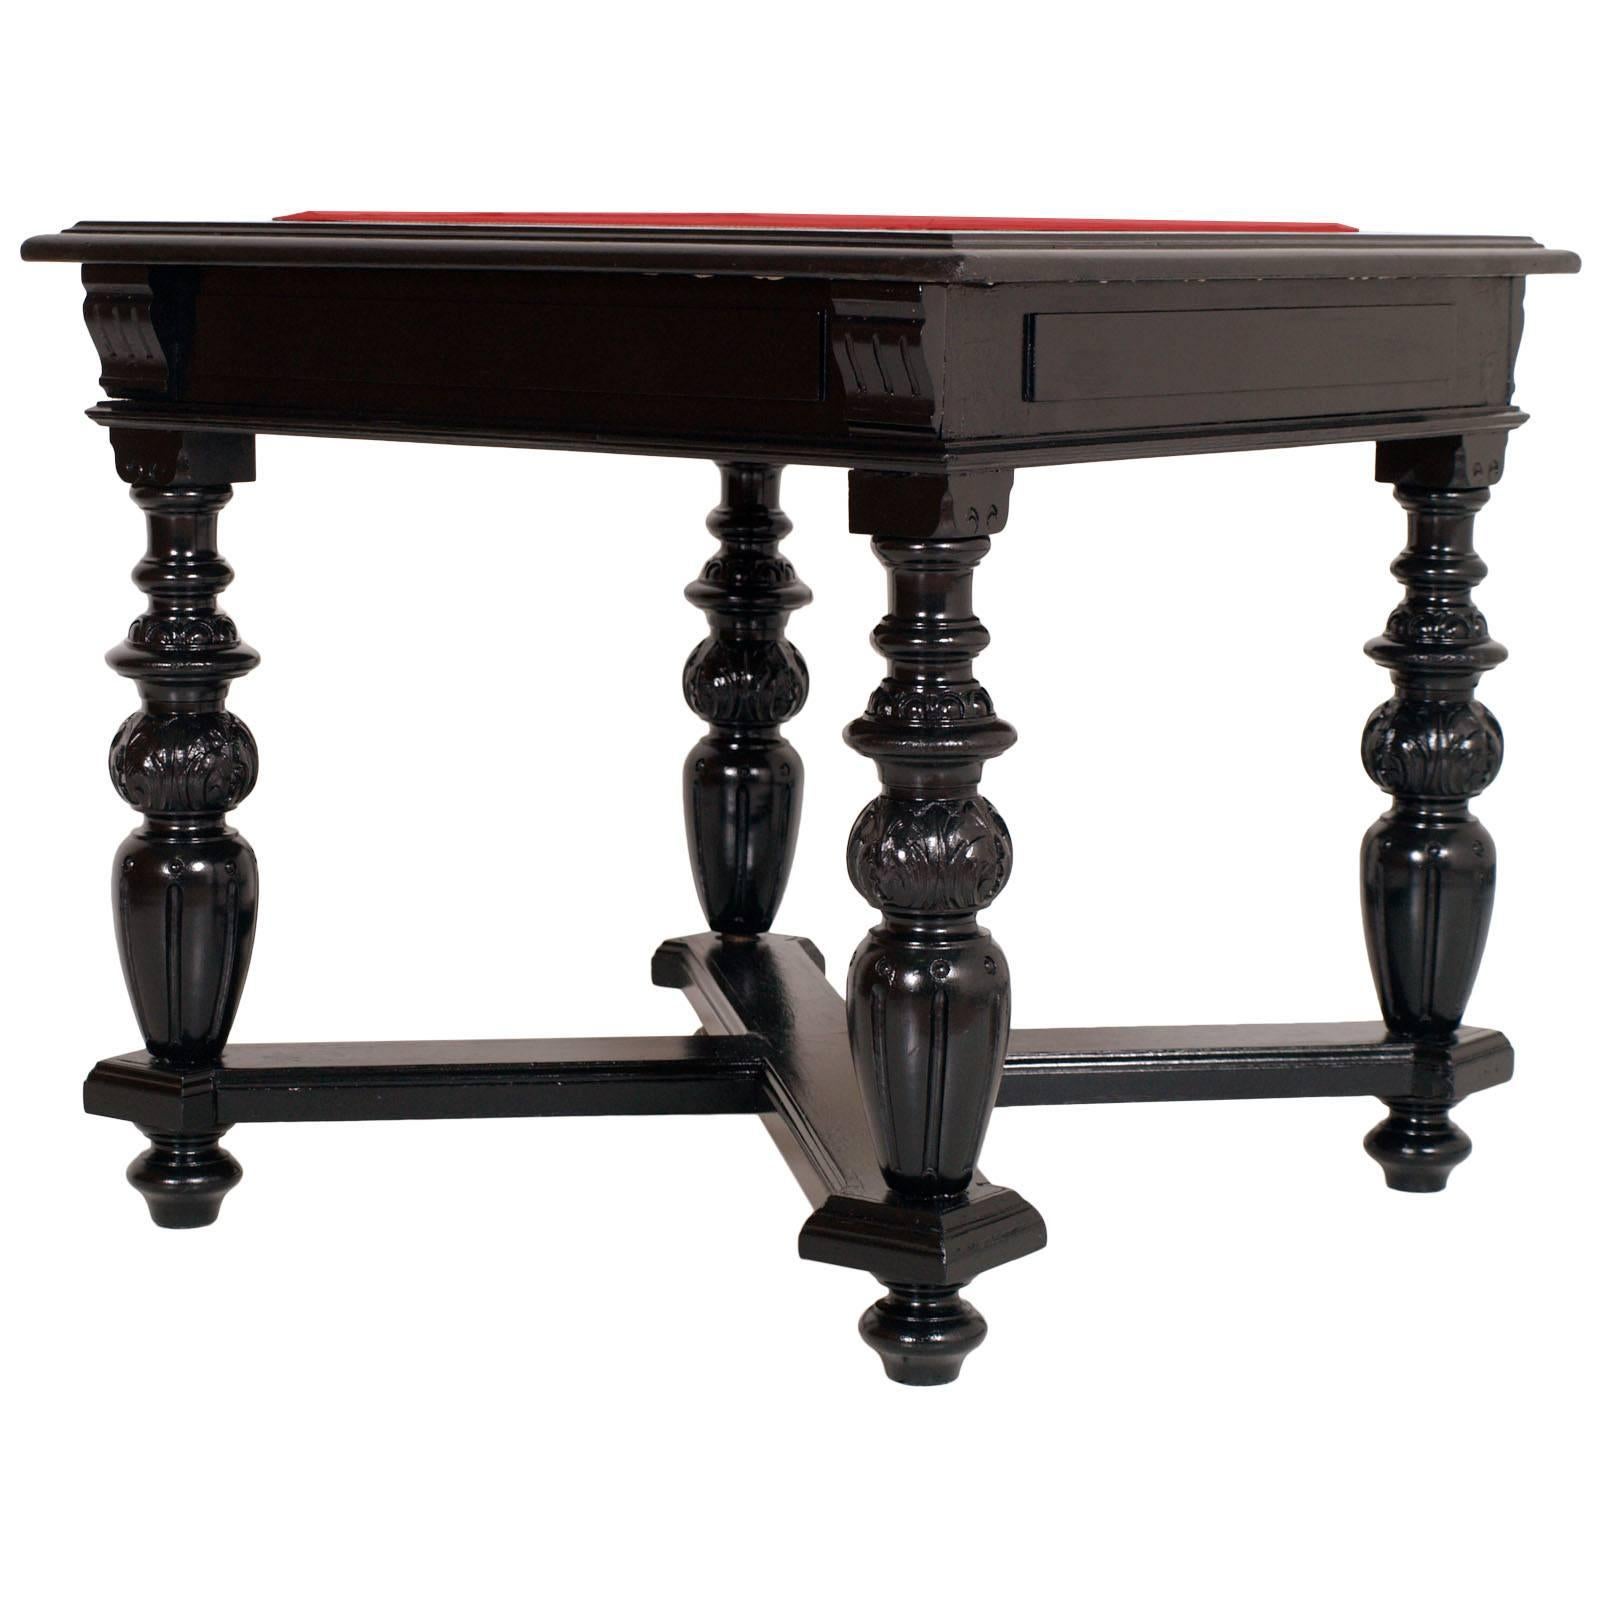 Toskana antiken neoklassischen Beistelltisch oder Spieltisch aus dem späten 18. Jahrhundert. Massiver ebonisierter Nussbaum mit gedrechselten Beinen und kreuzförmiger unterer Querstrebe. Wir haben ihn konservativ restauriert und die Decke mit rotem